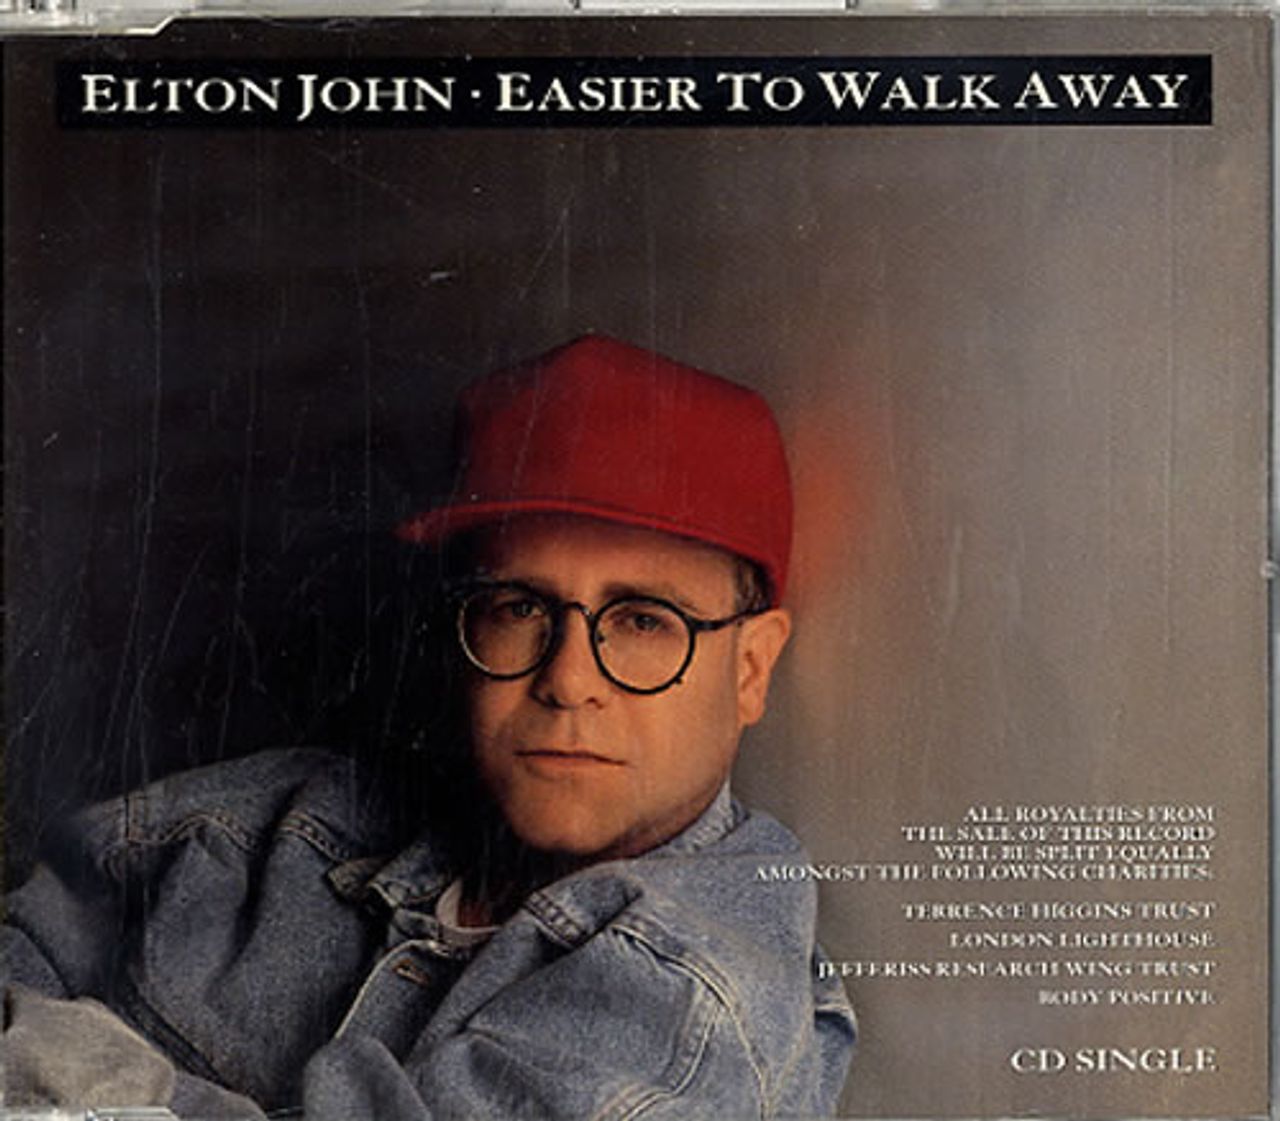 Elton John Easier To Walk Away UK CD single — RareVinyl.com